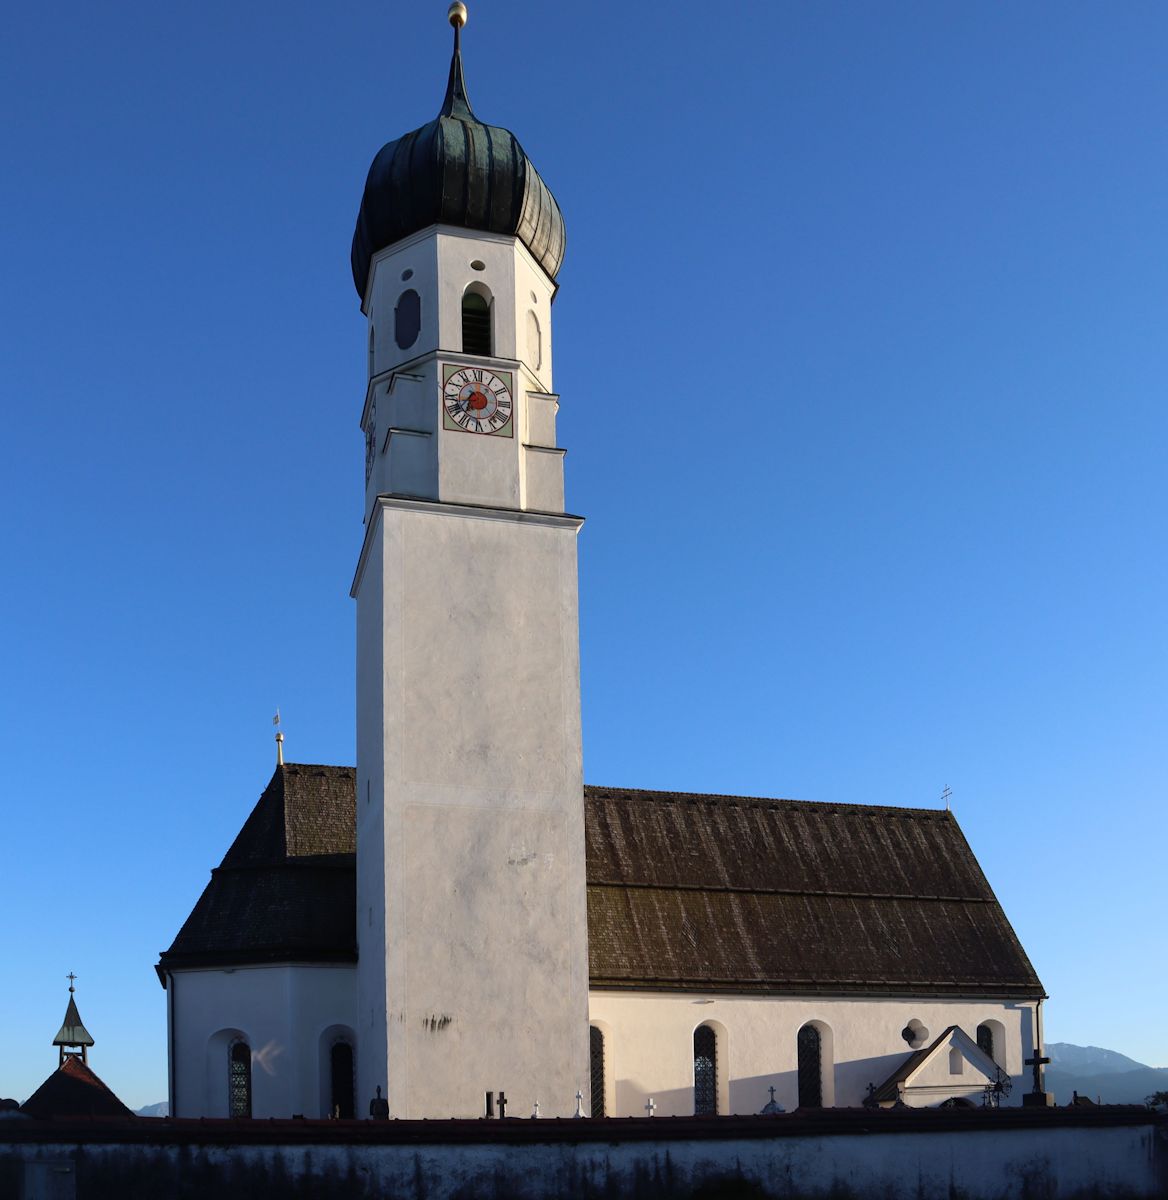 Pfarrkirche in Gaißach bei Bad Tölz